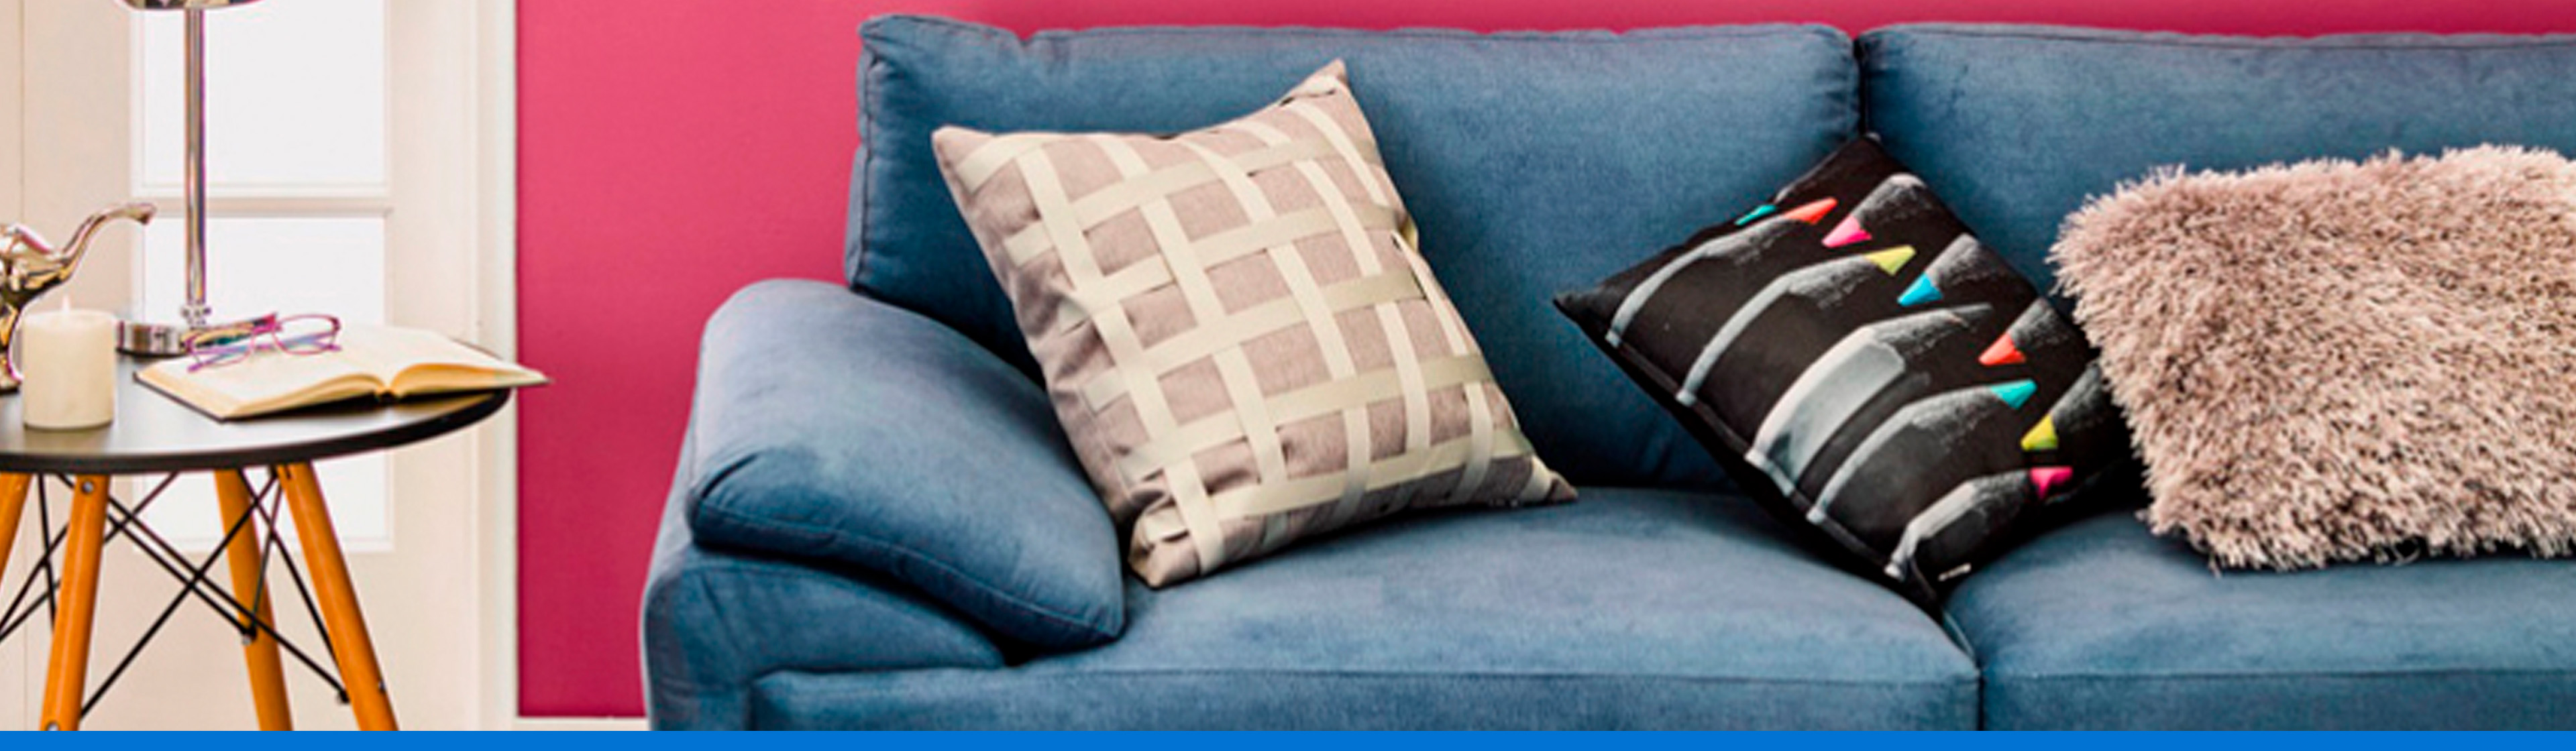 Dale personalidad a tu sofá y aprende a decorar con cojines